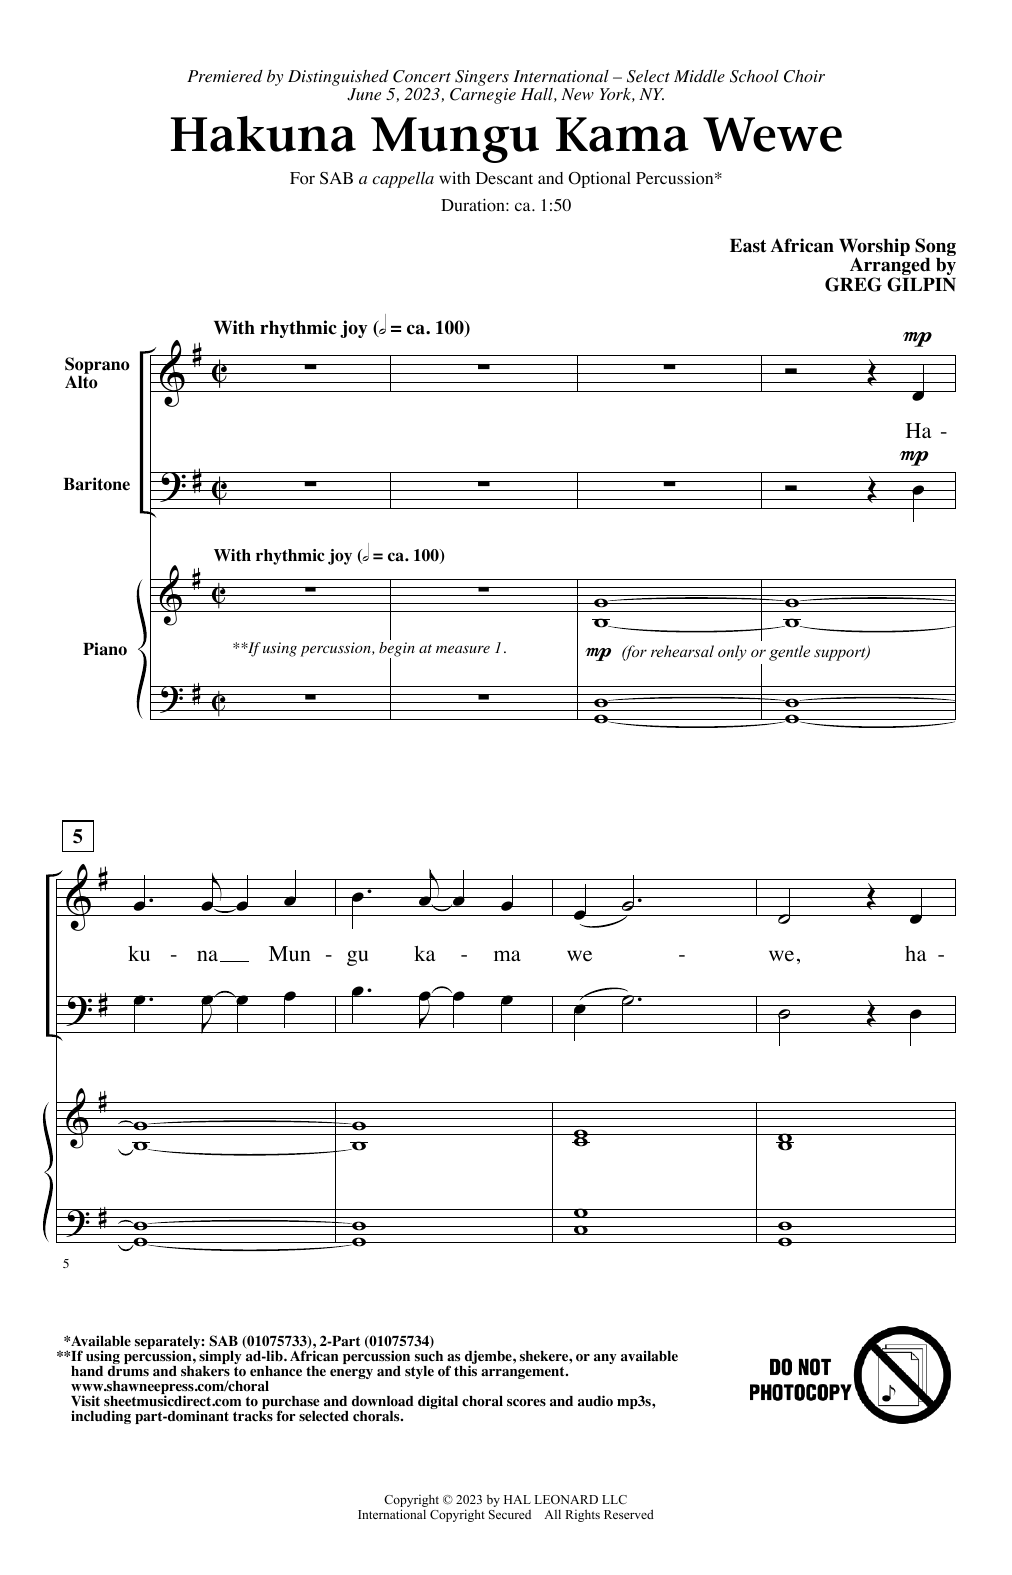 Greg Gilpin Hakuna Mungu Kama Wewe Sheet Music Notes & Chords for 2-Part Choir - Download or Print PDF